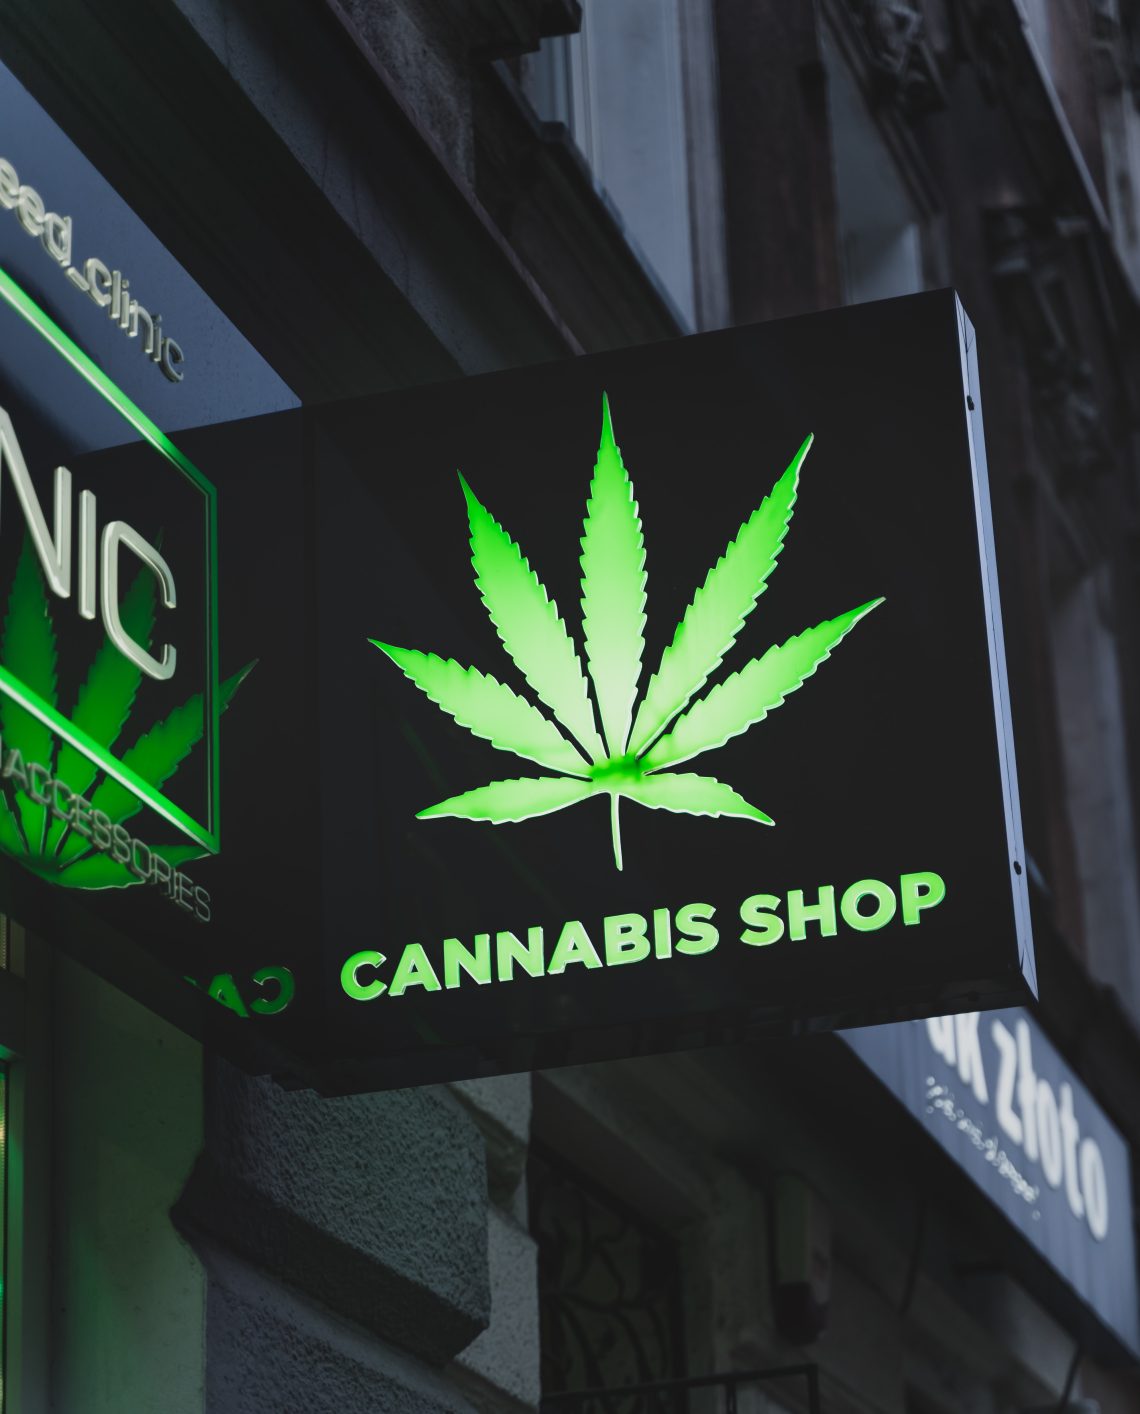 Choosing the right cannabis shop